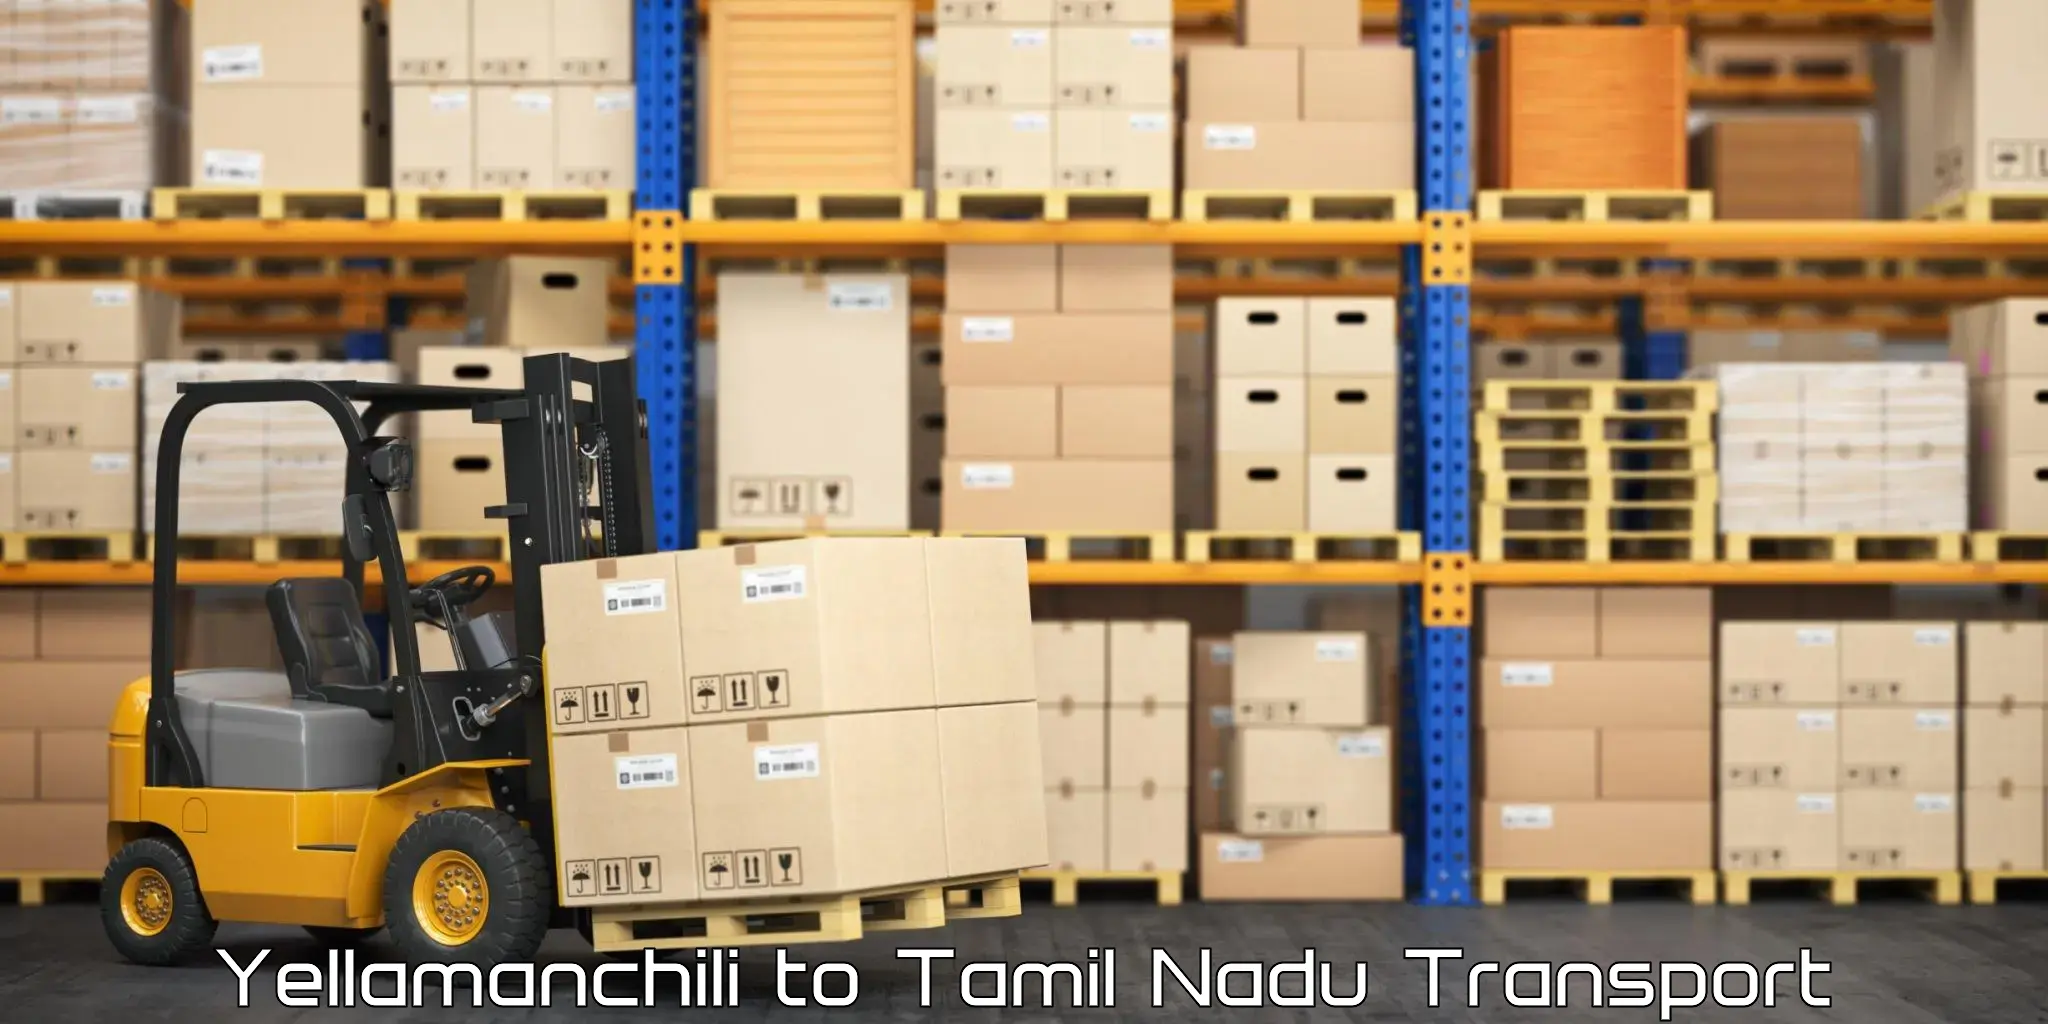 Shipping partner Yellamanchili to Tamil Nadu